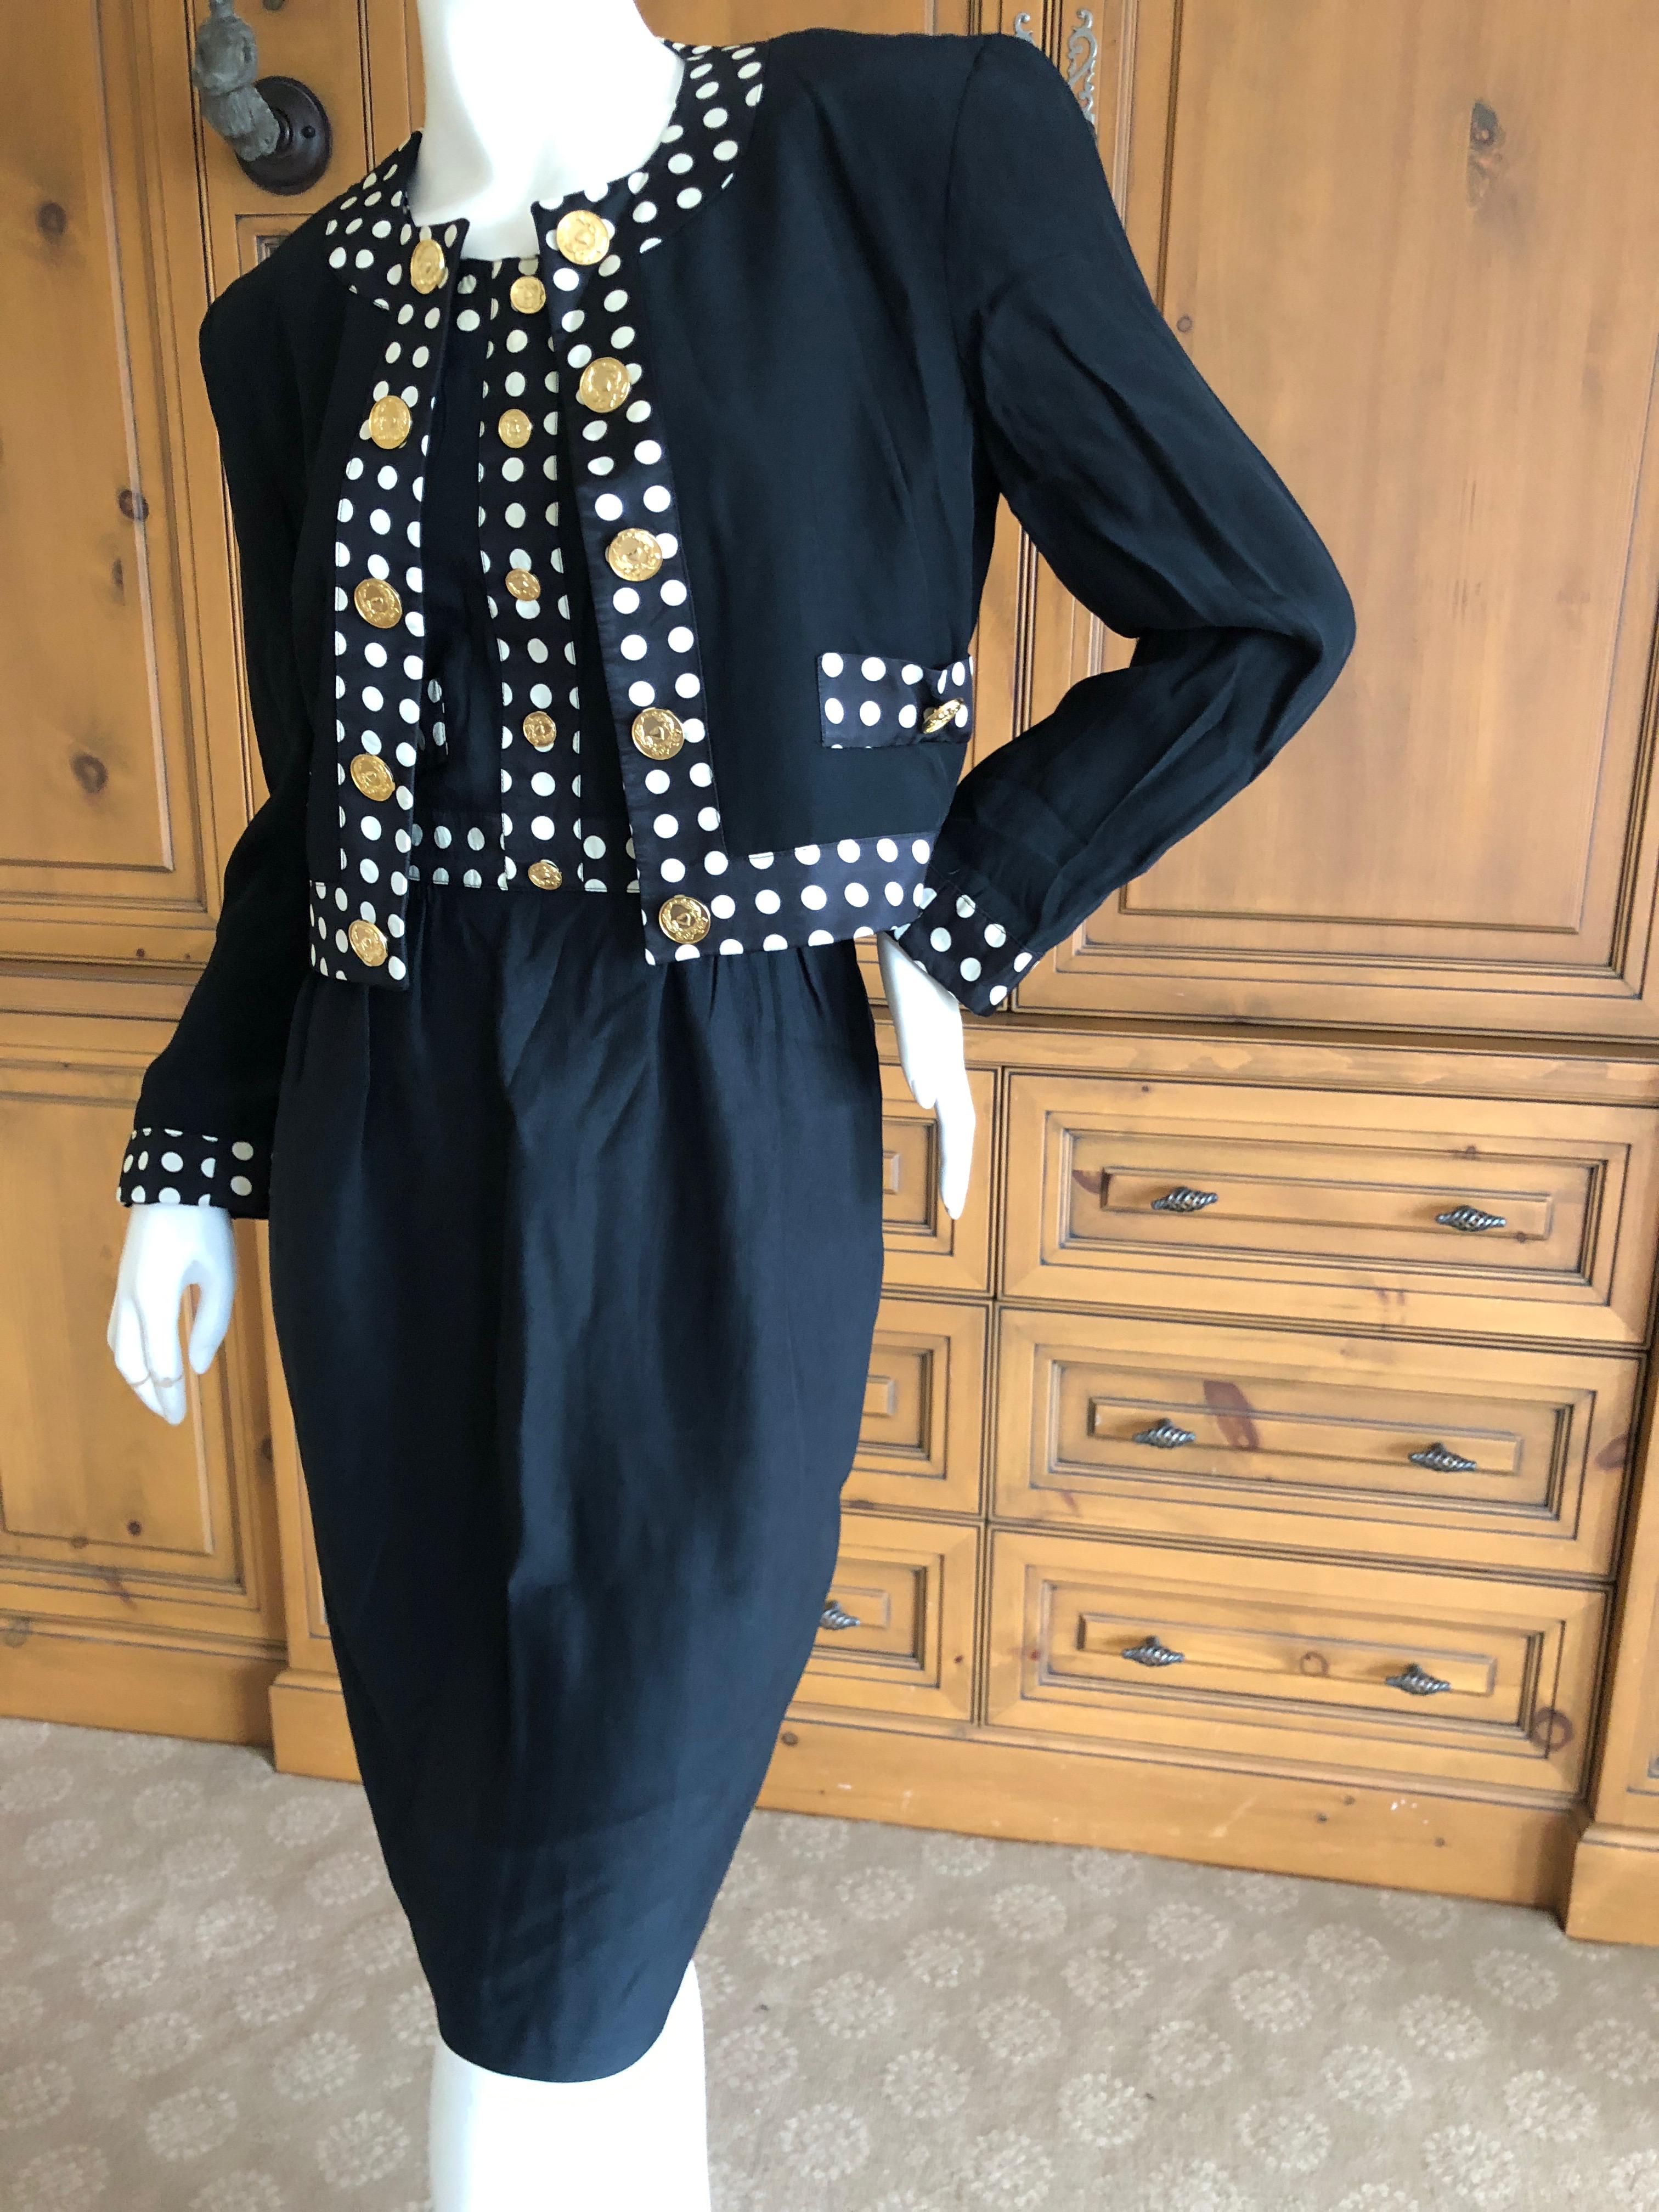 Women's Moschino Pret a Porter Polka Dot '80's Dress Matching Jacket w Bold Gold Buttons